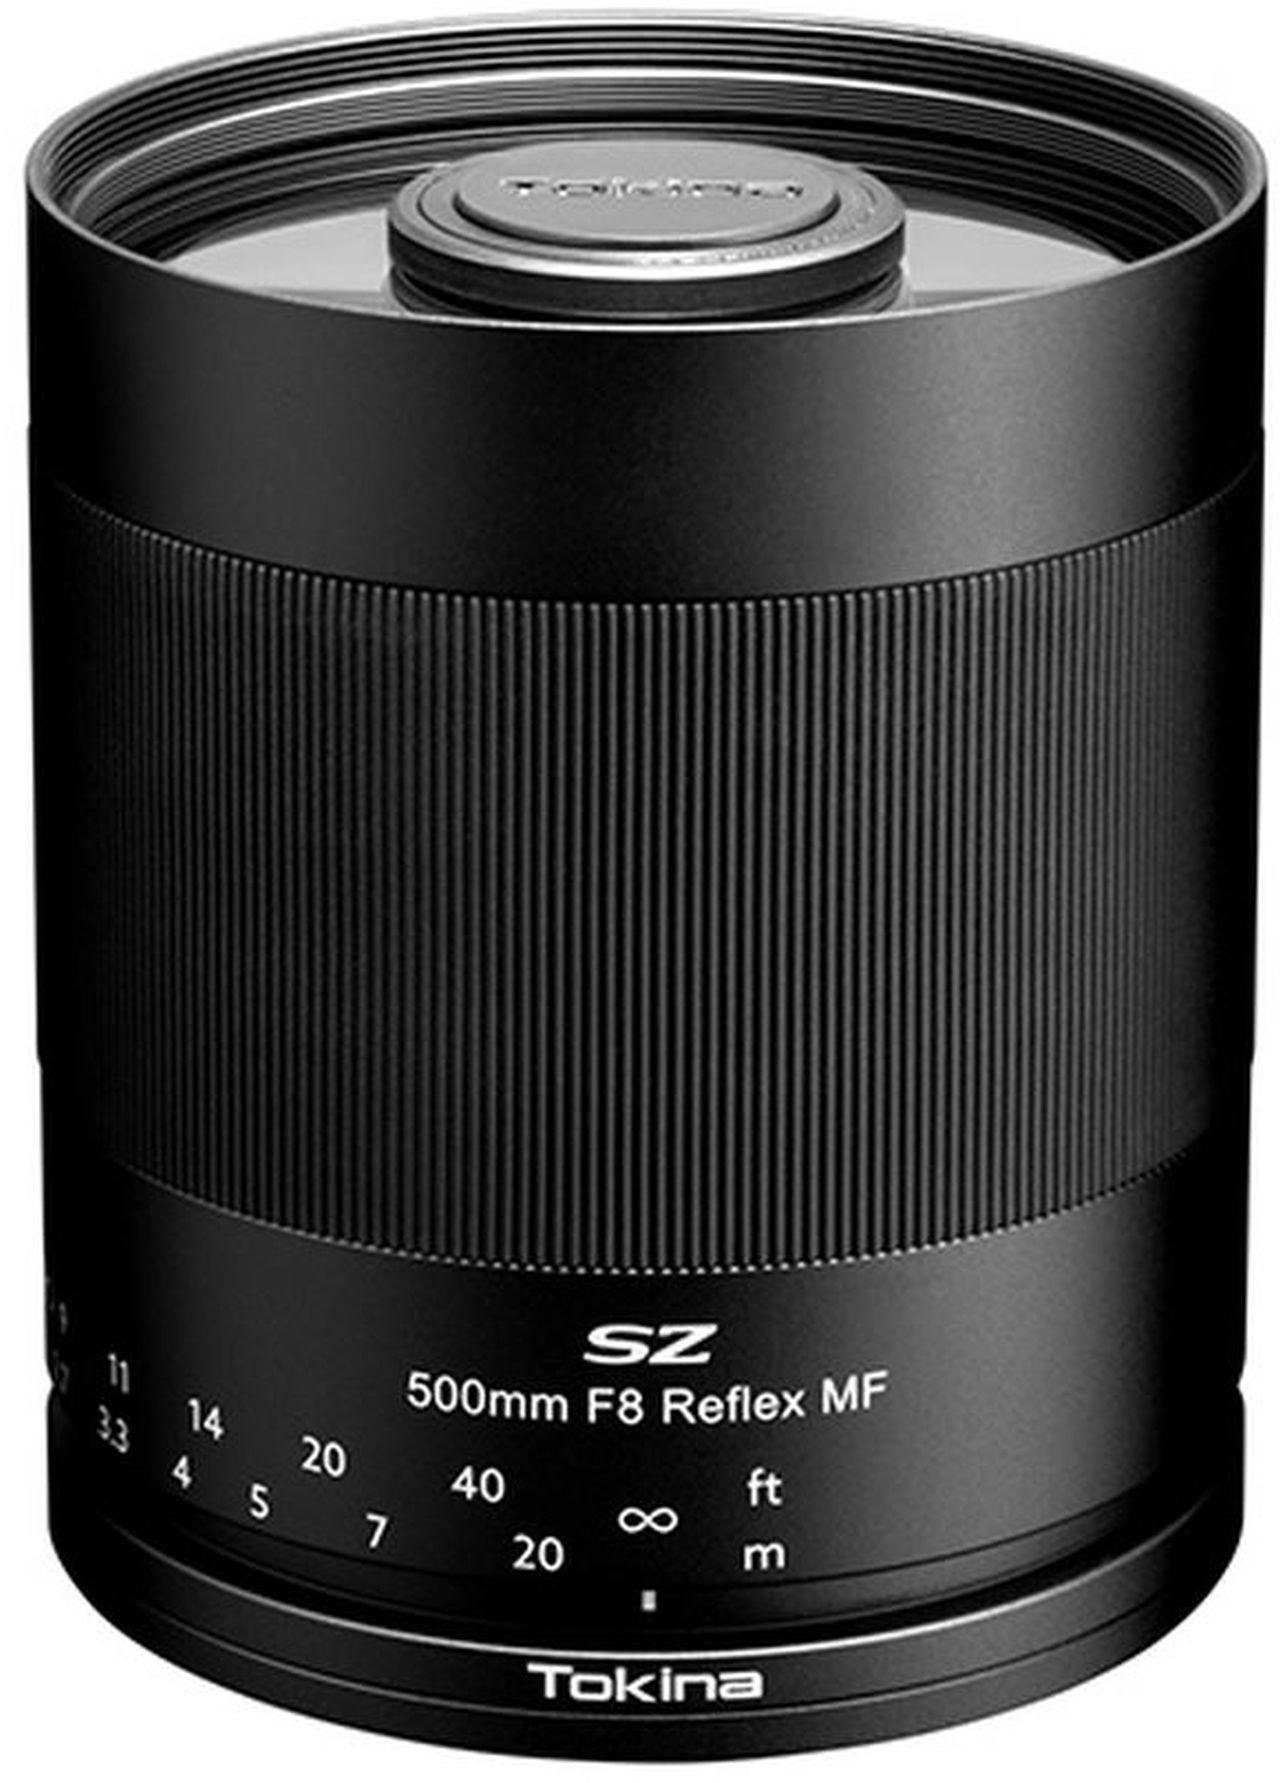 Tokina SZ 500mm F8 Reflex MF Sony E Objektiv | Objektive